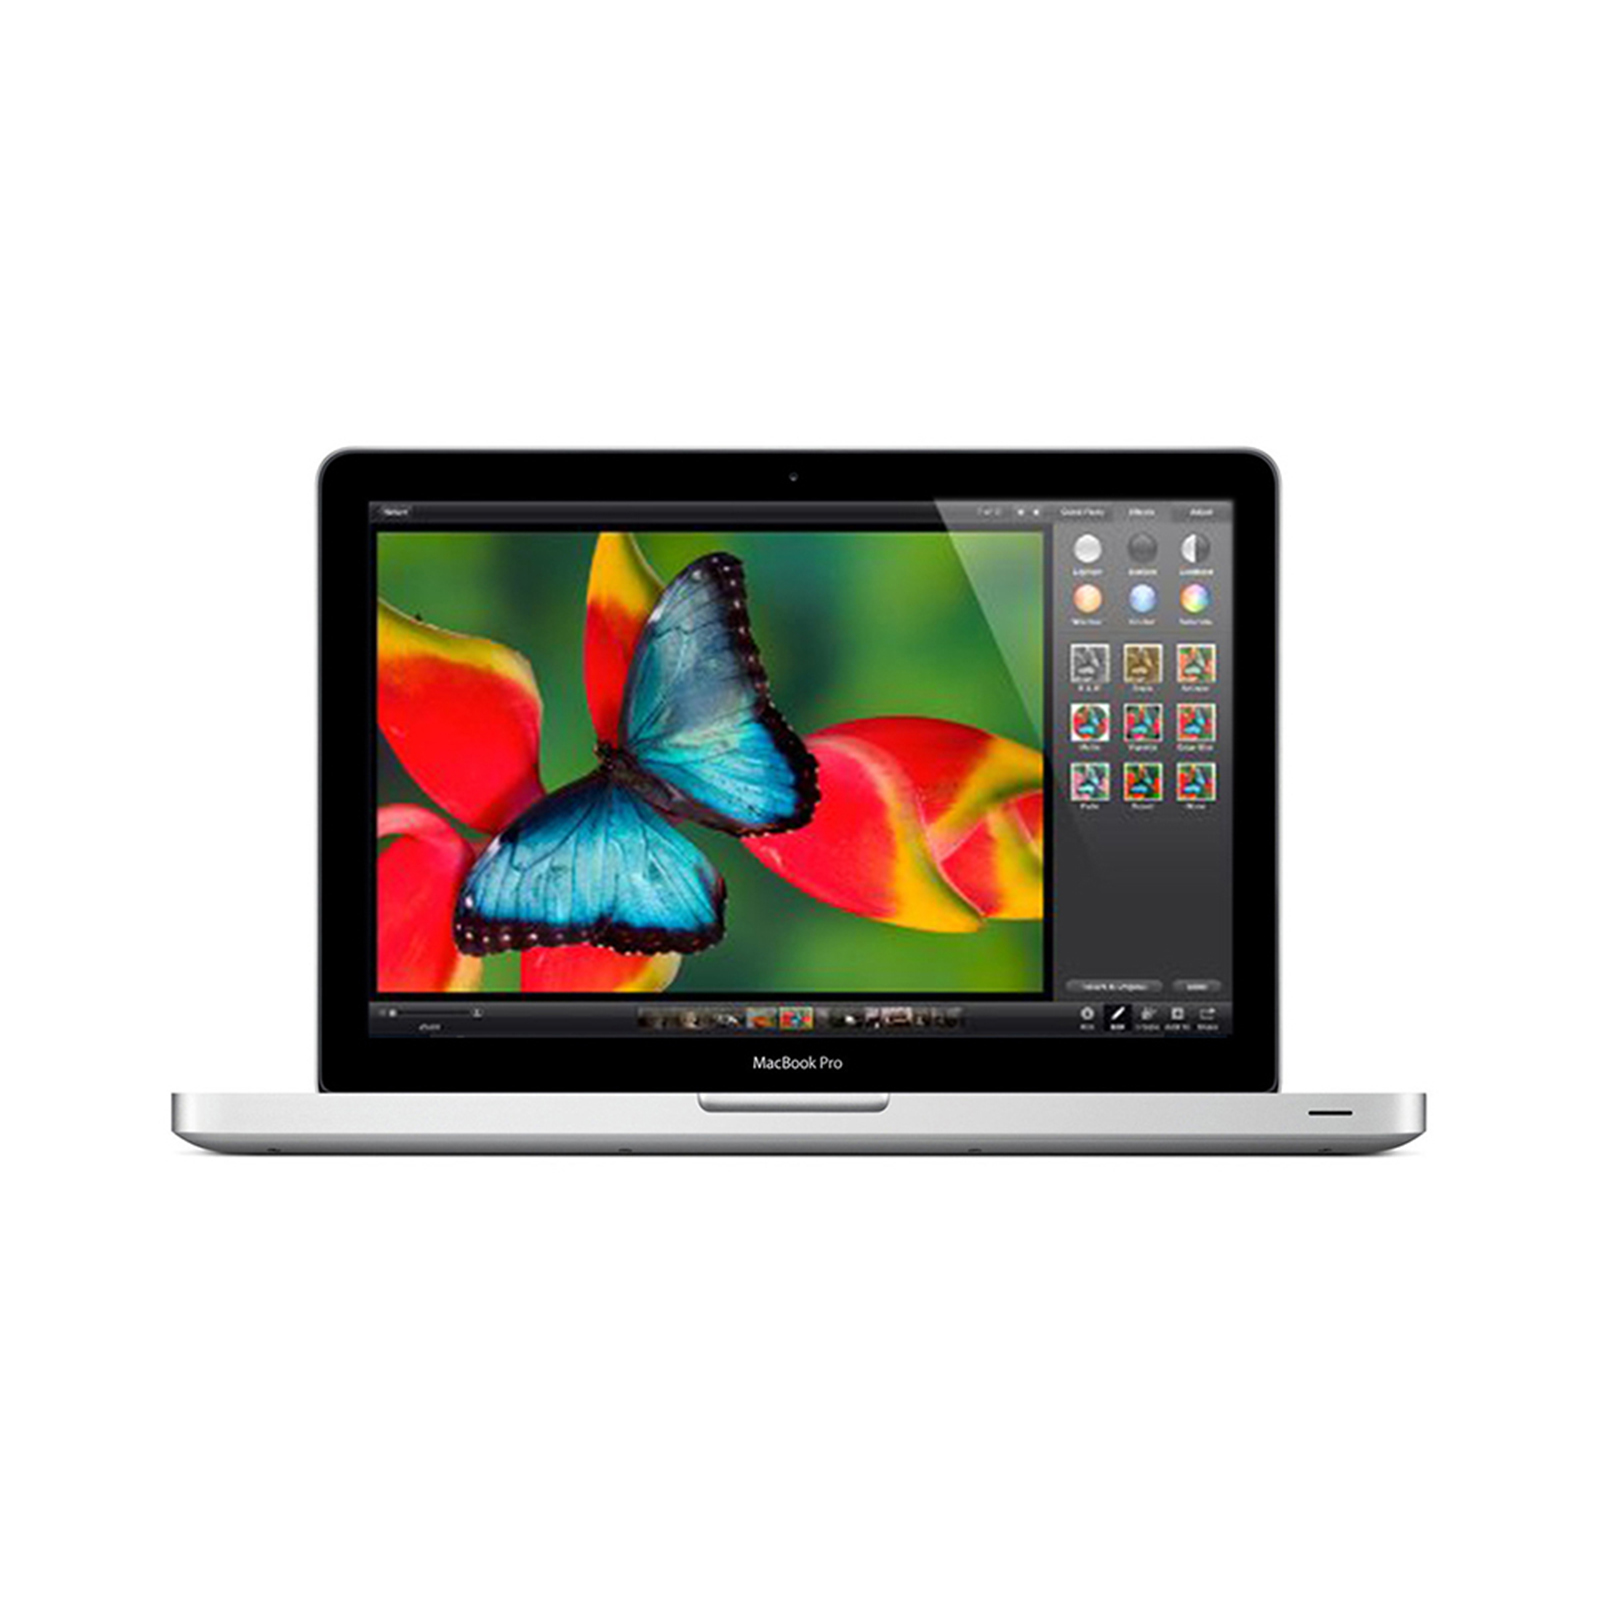 MacBook Pro 15" Mid 2012 - Core i7 / 16GB RAM / 500GB HDD 